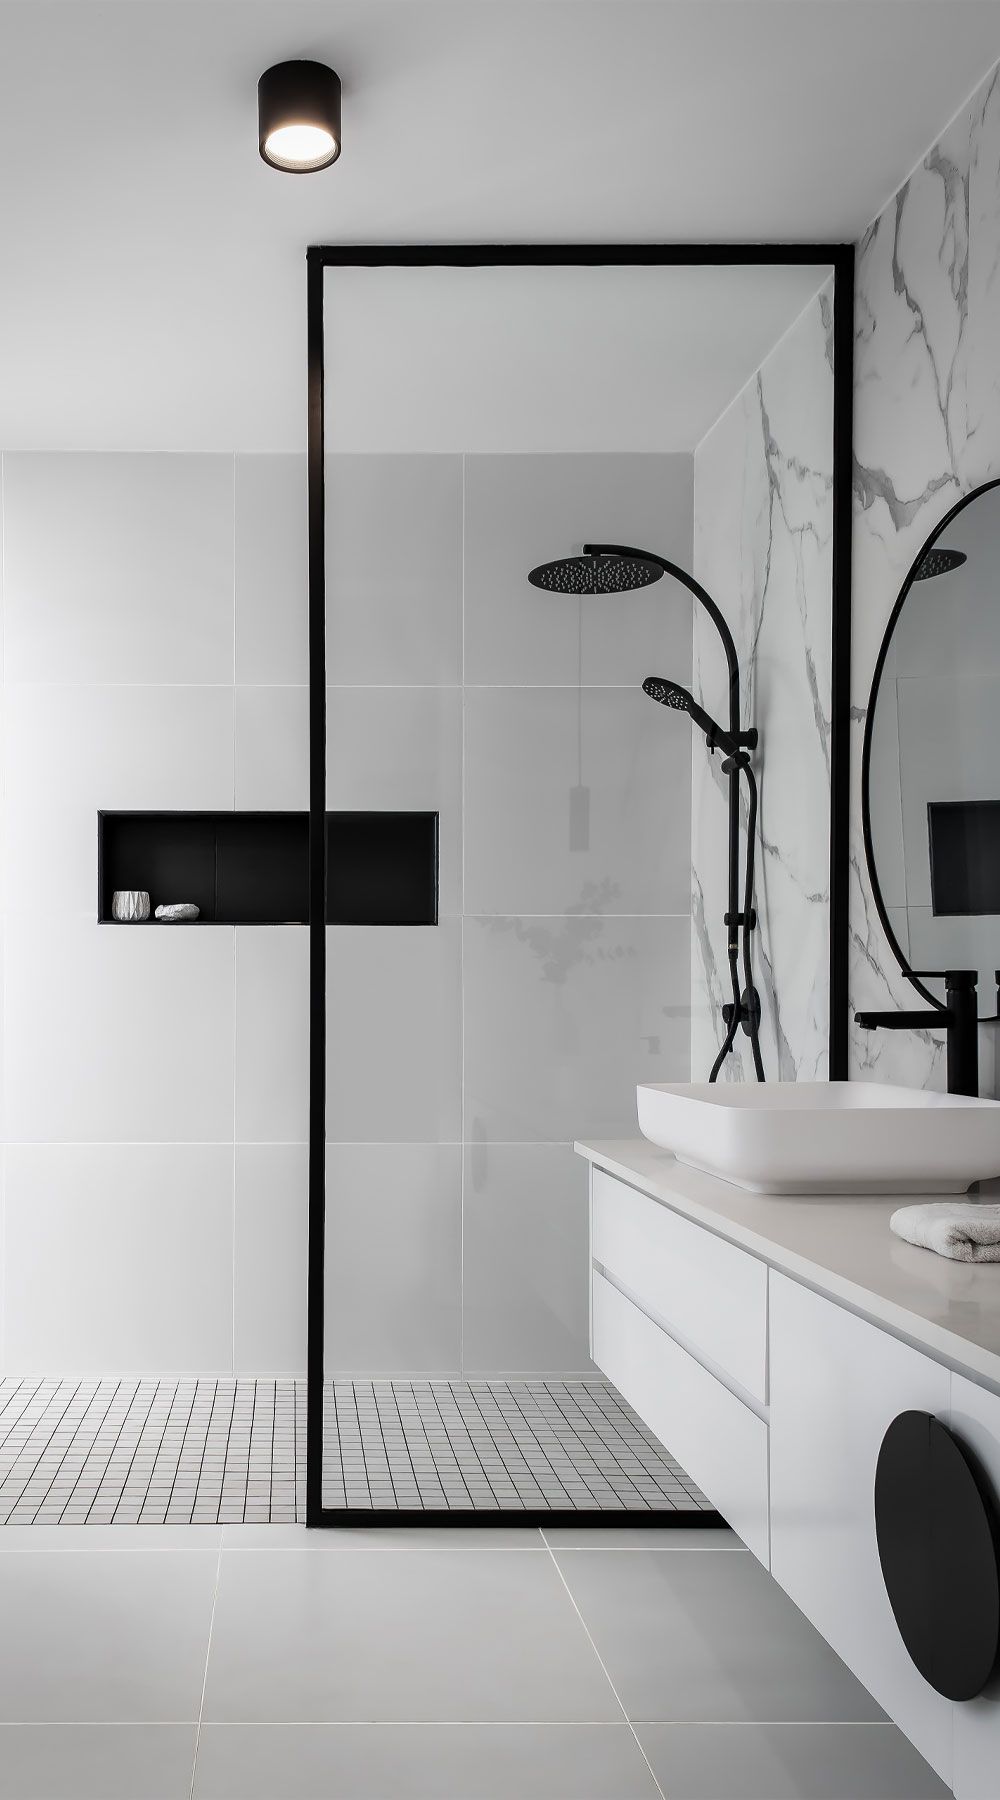 Modern Bathroom Ideas for Your Home